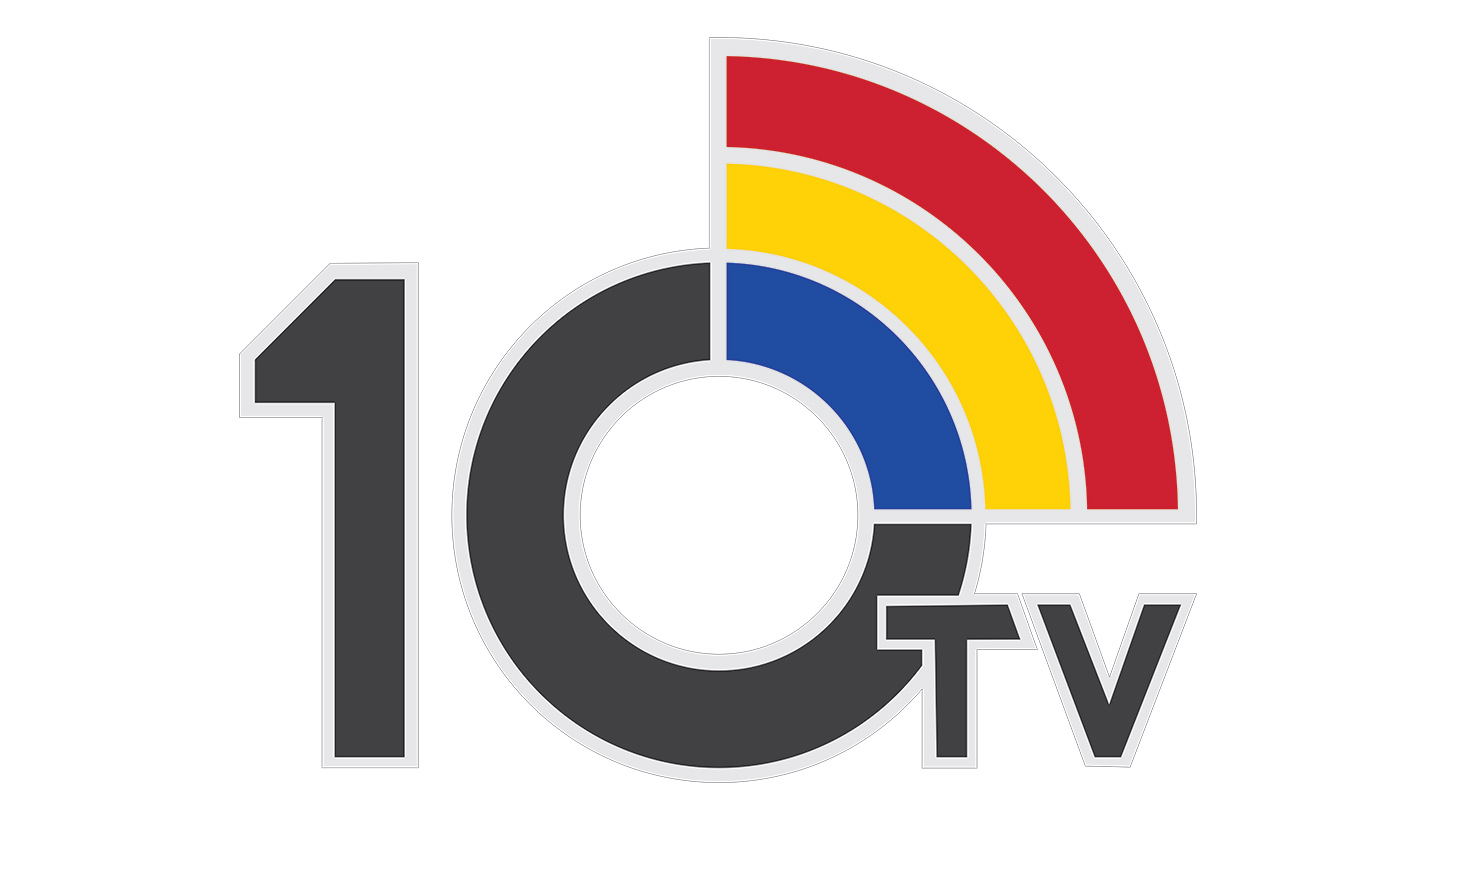 10 TV